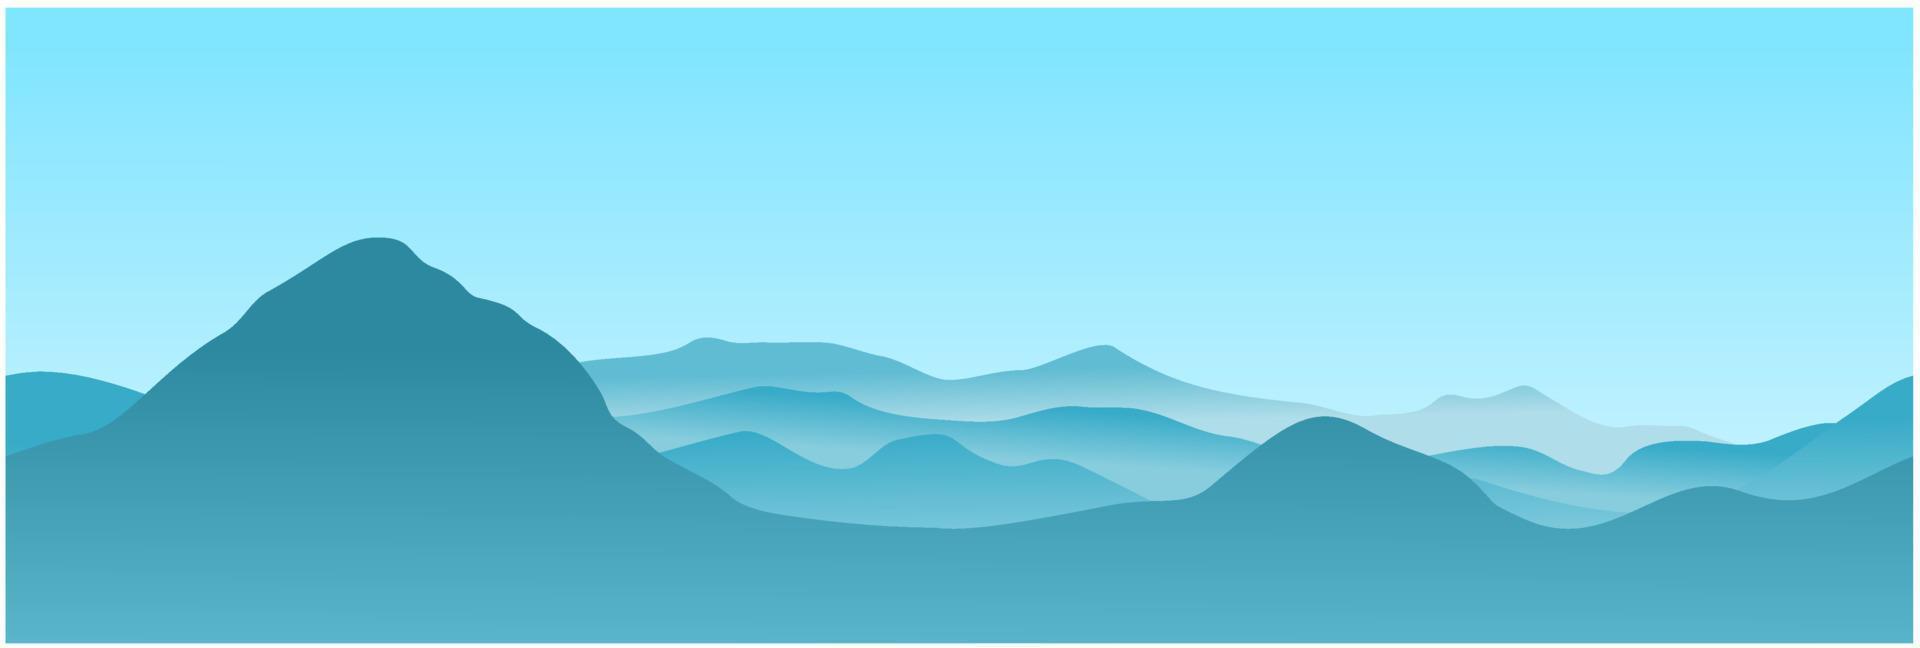 paisagem de cristas montanhosas de vetor azul cinza